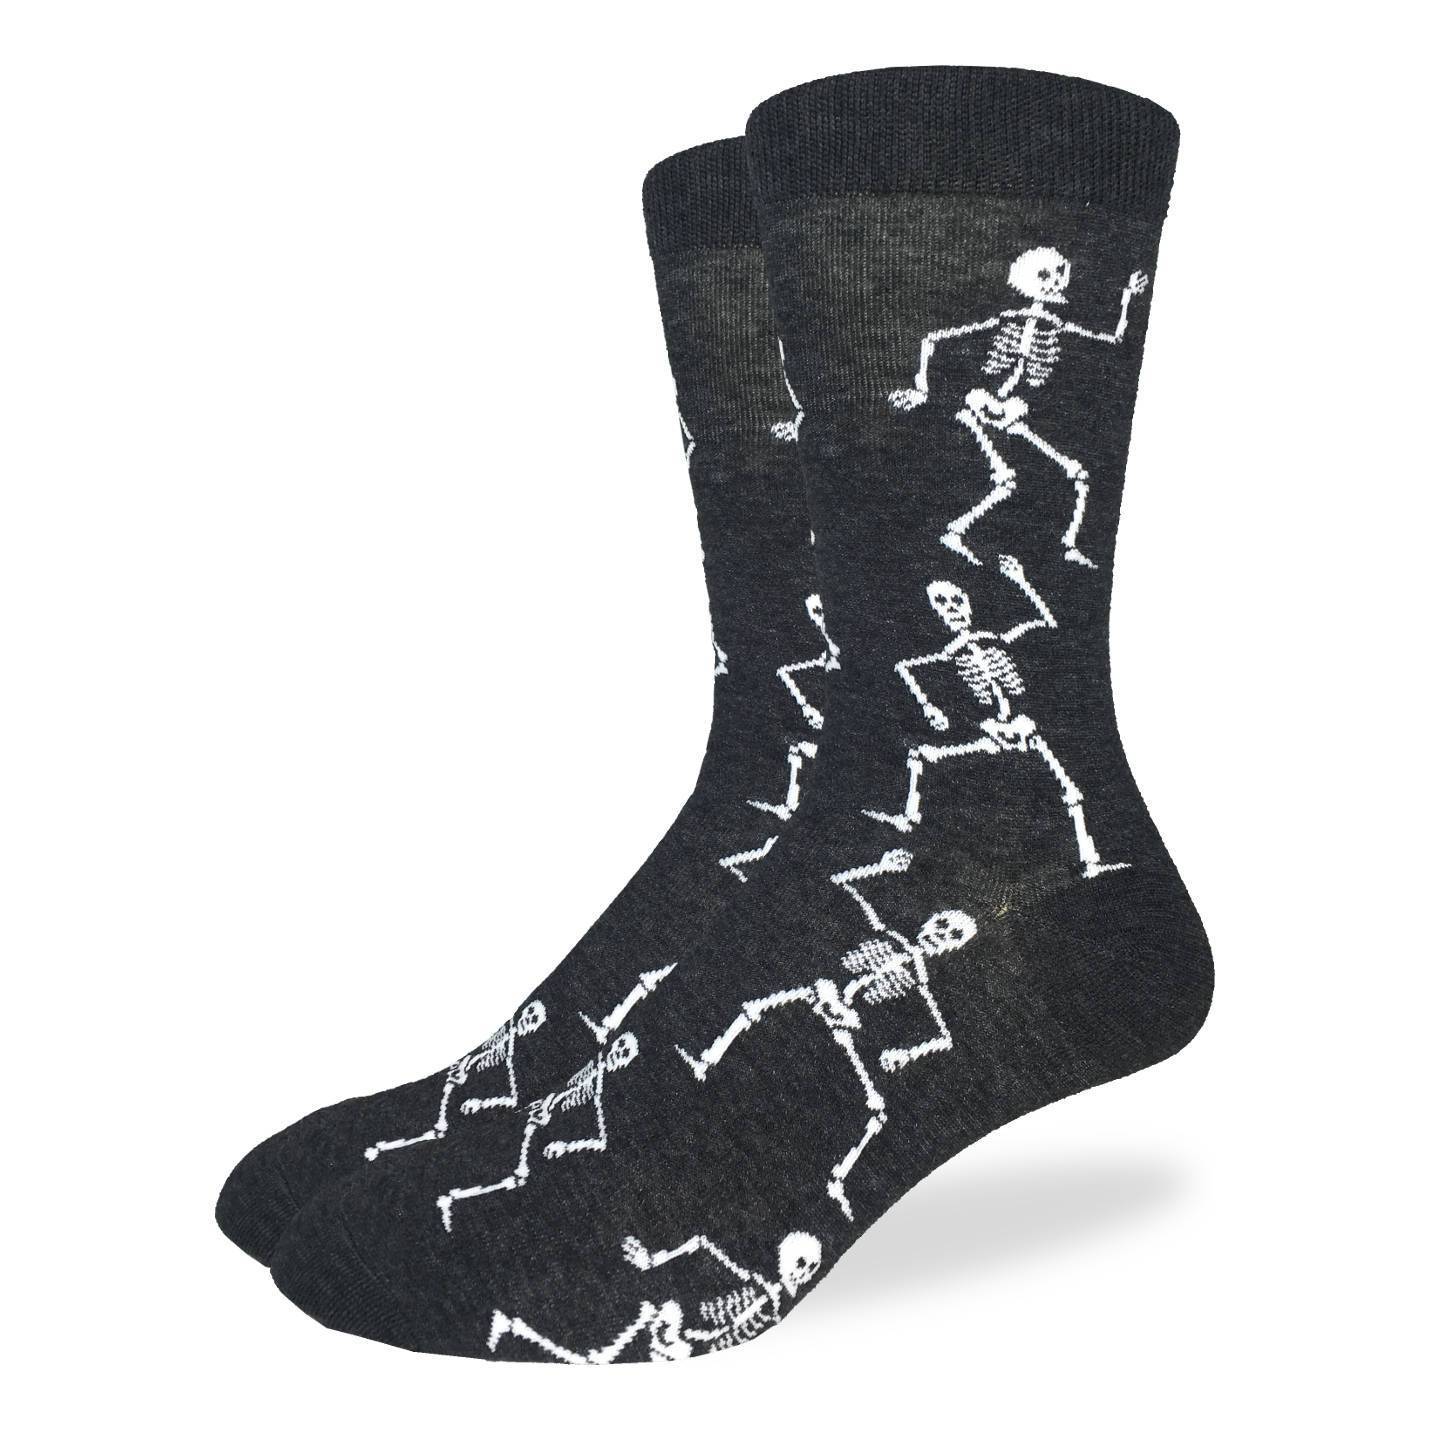 Men's King Size Skeletons Socks – Good Luck Sock